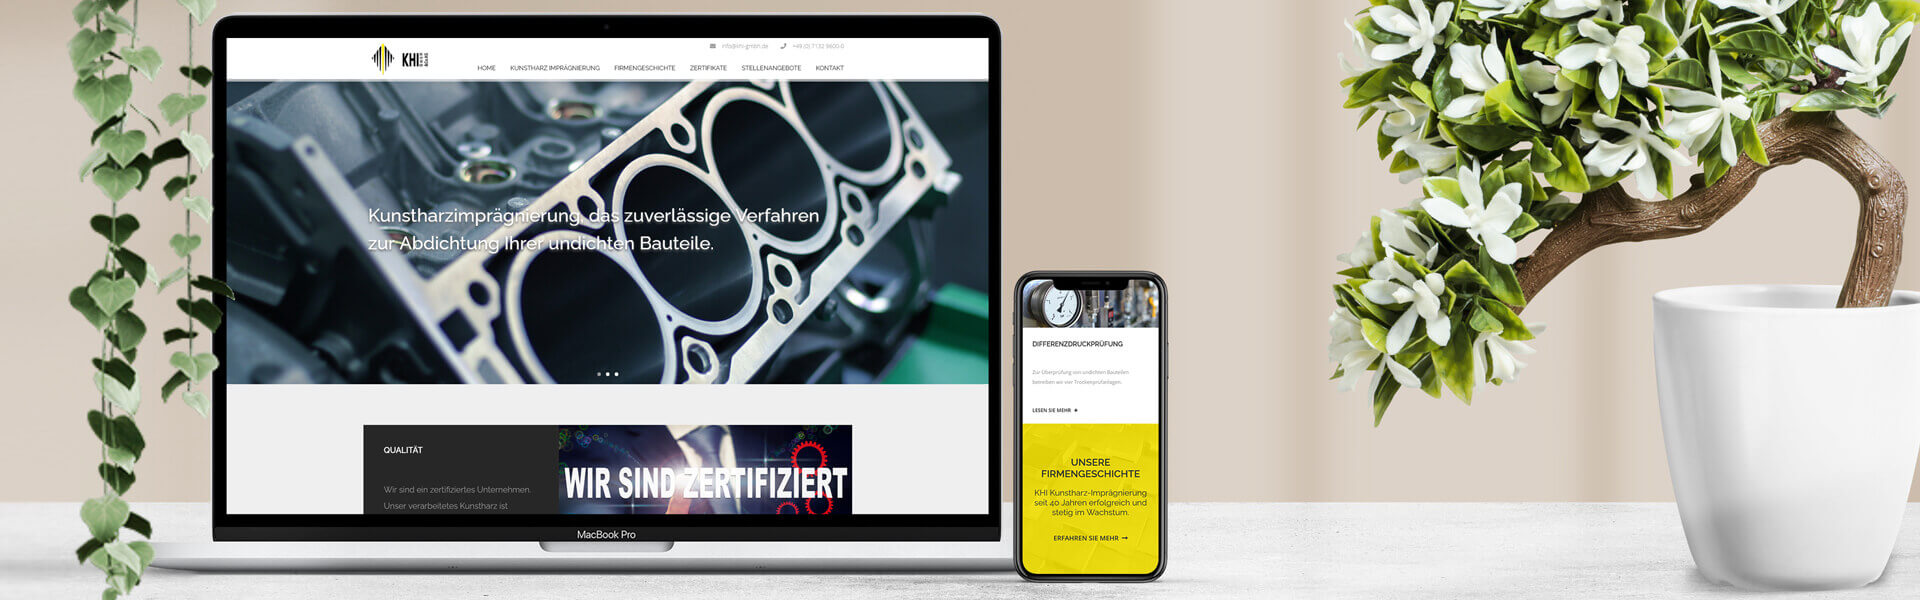 Responsive Webdesign für KHI Kunstharz-Imprägnierung